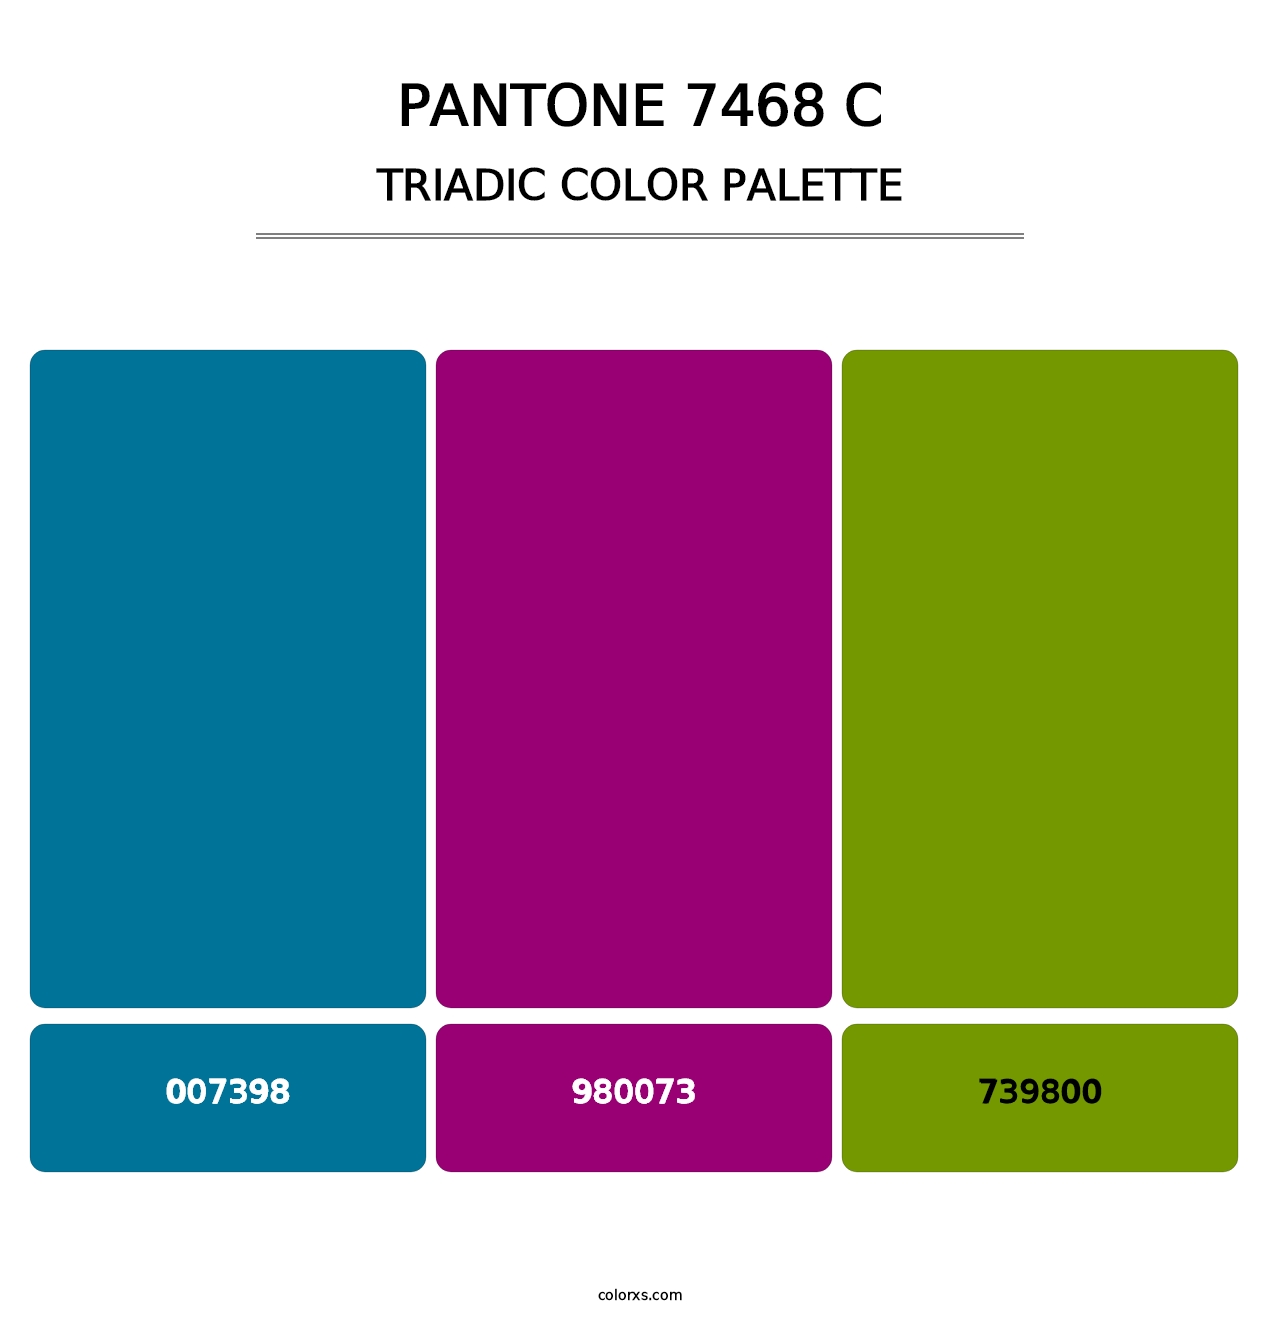 PANTONE 7468 C - Triadic Color Palette